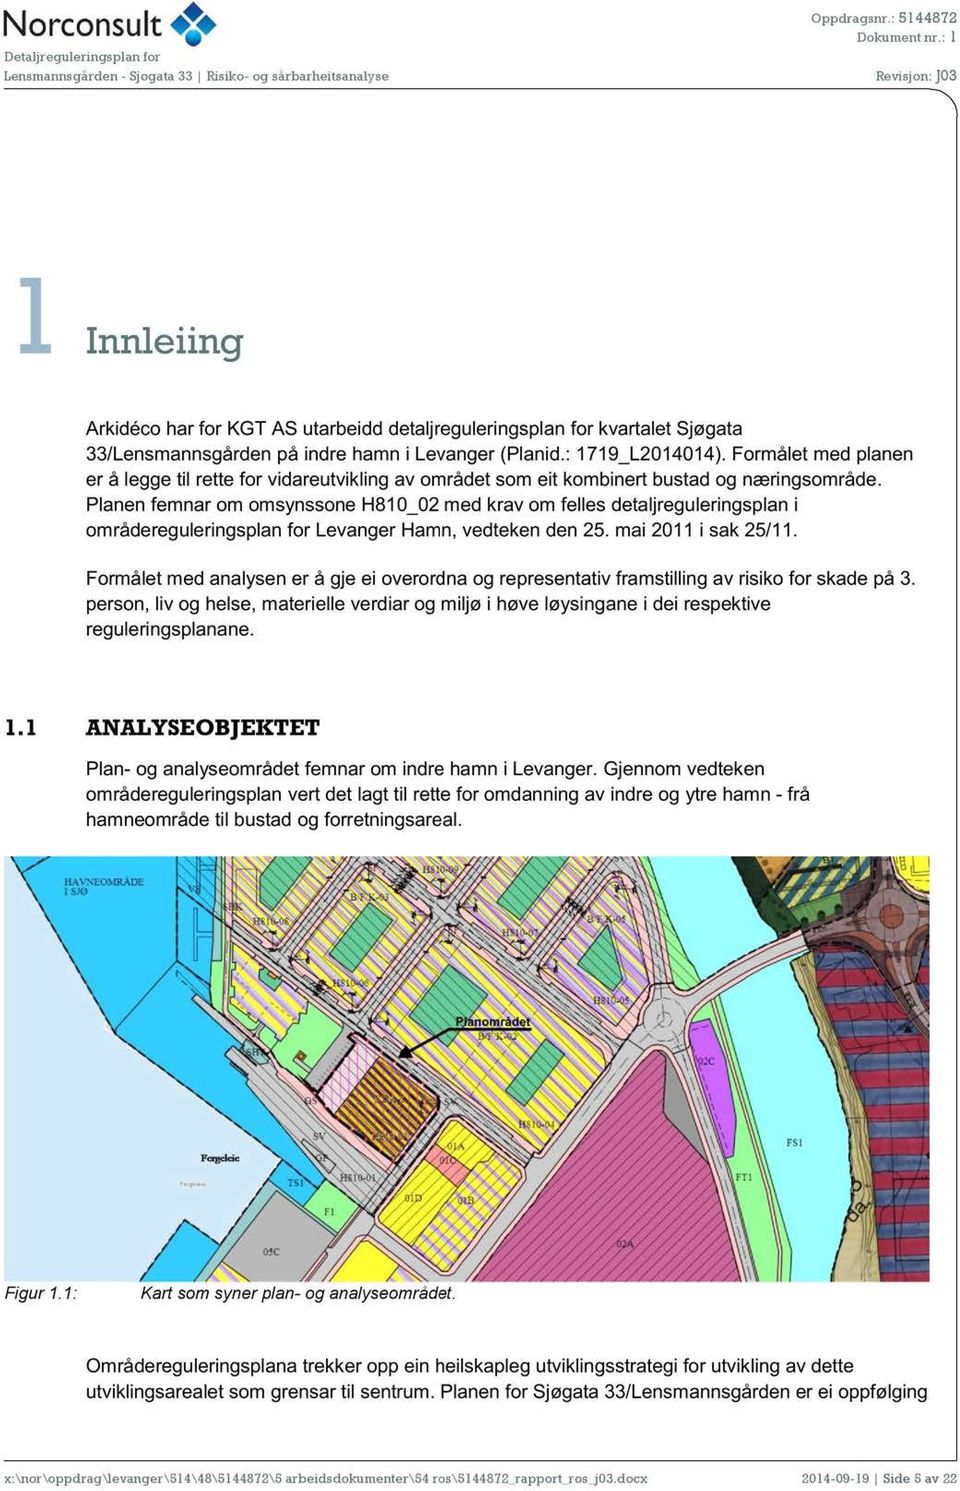 Planen femnar om omsynssone H810_02 med krav om felles detaljreguleringsplan i områdereguleringsplan for Levanger Hamn, vedteken den 25. mai 2011 i sak 25/11.